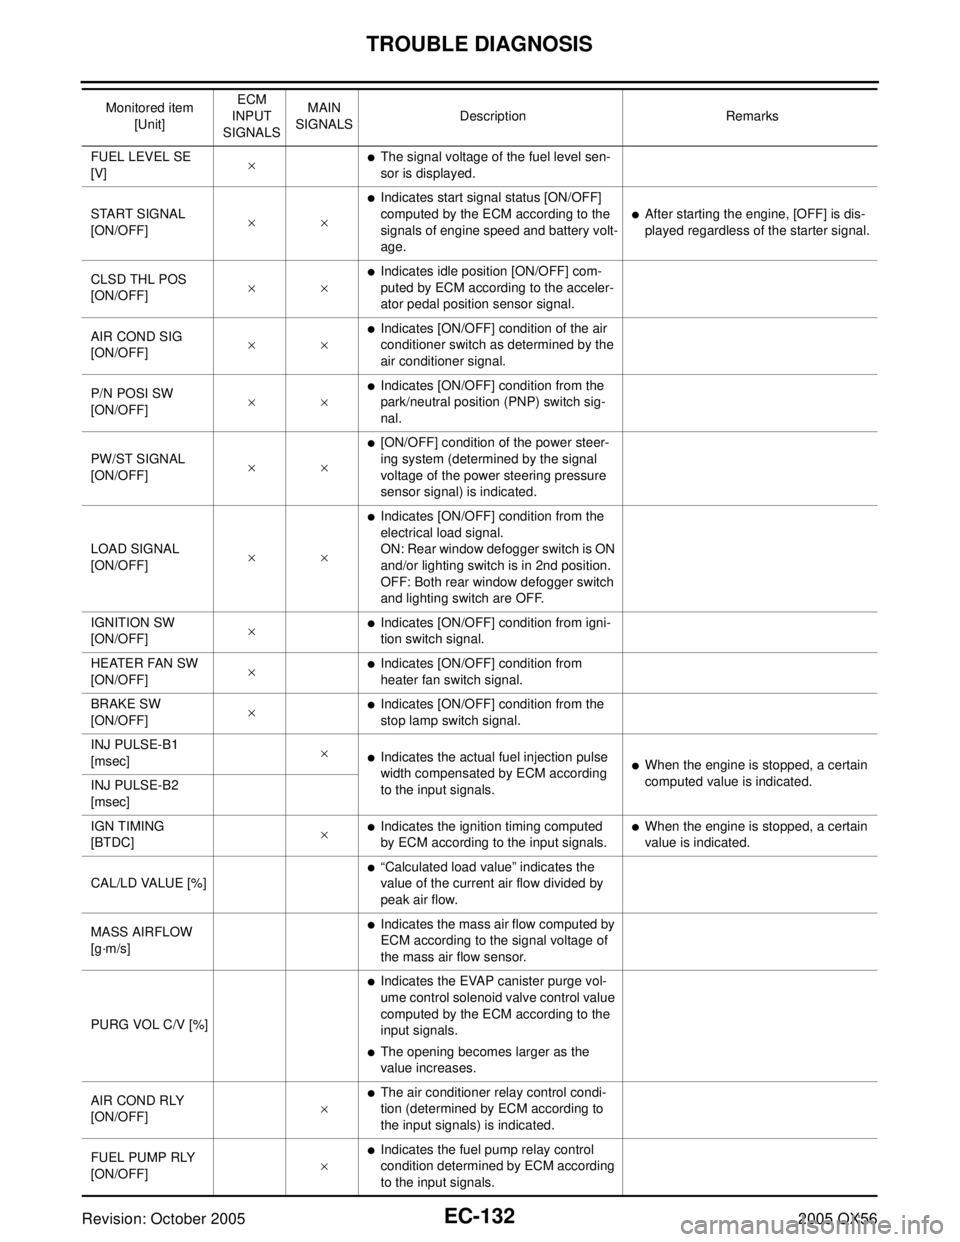 INFINITI QX4 2005  Factory Service Manual EC-132Revision: October 2005
TROUBLE DIAGNOSIS
2005 QX56
FUEL LEVEL SE 
[V]×The signal voltage of the fuel level sen-
sor is displayed.
START SIGNAL 
[ON/OFF]××
Indicates start signal status [ON/